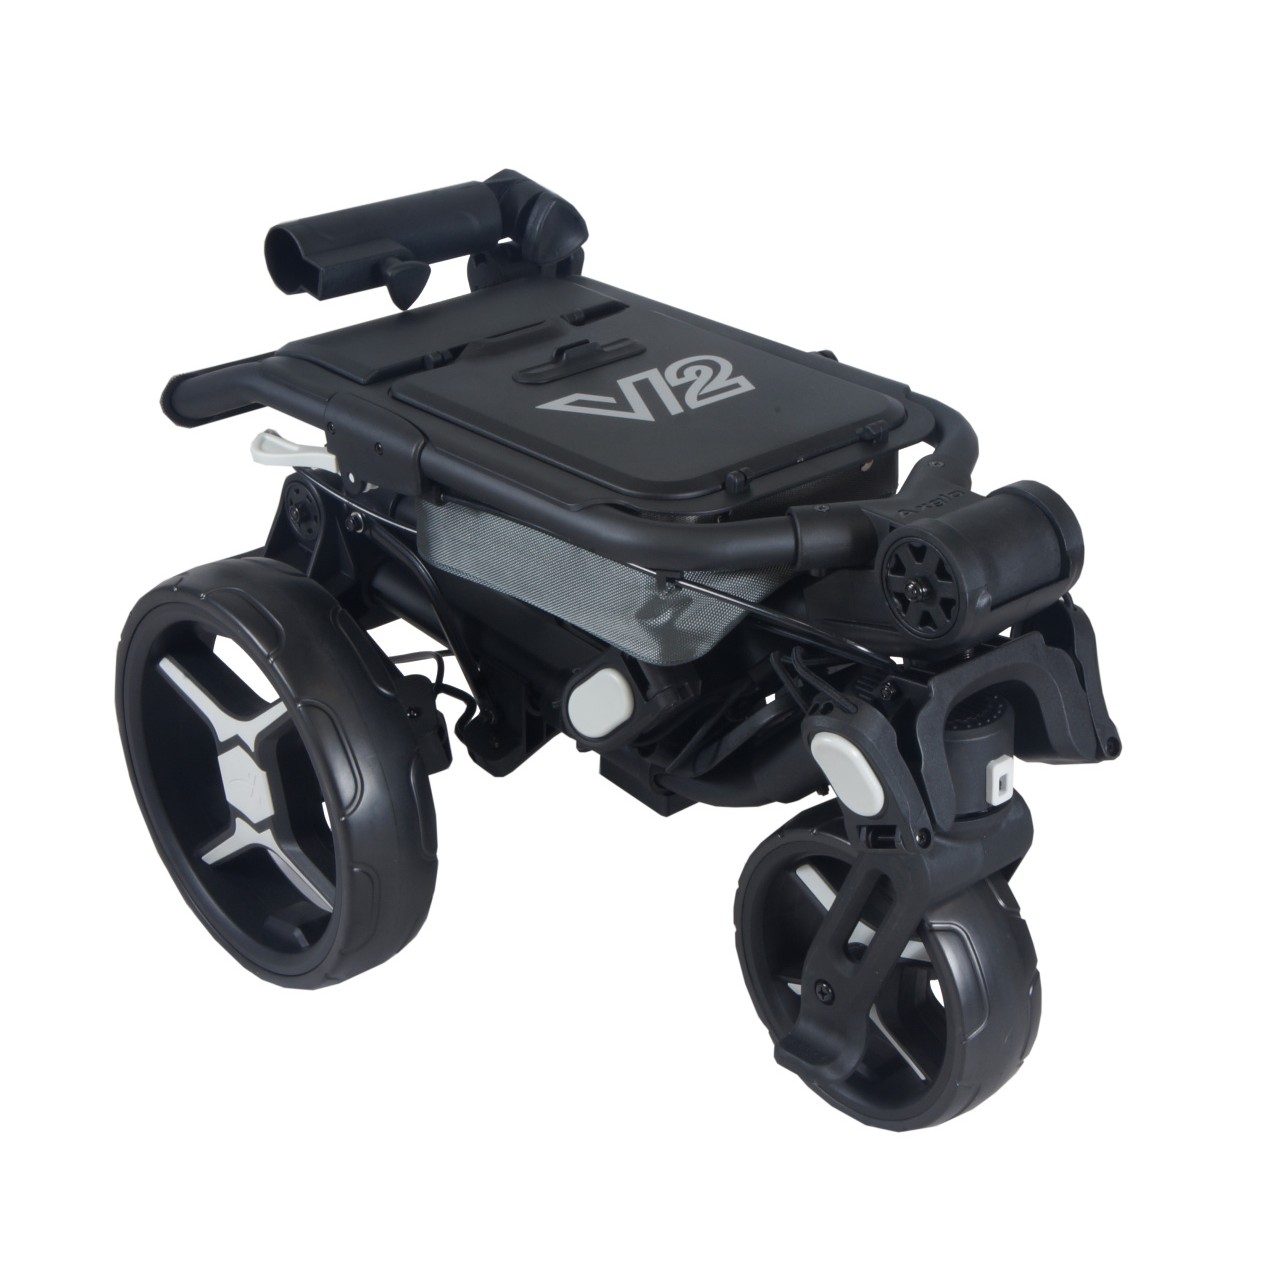 AXGLO Tri-360 V2 ruèní tøíkolový golfový vozík BLACK/GREY + ZDARMA obal na kola - zvìtšit obrázek